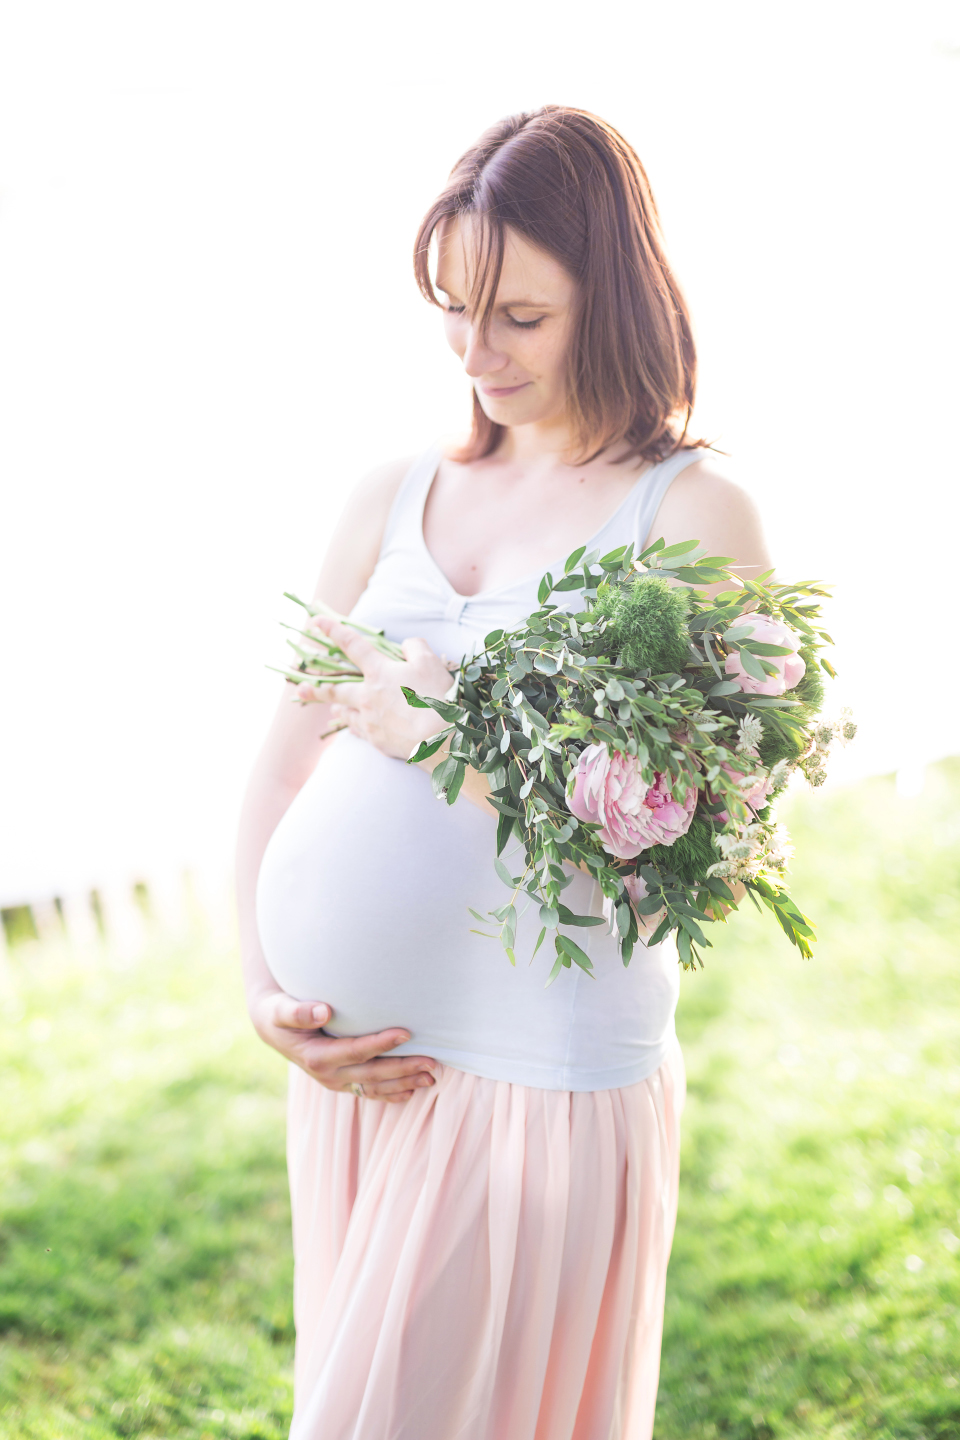 Séance photo maternité en extérieur - Photographe de grossesse à Tours